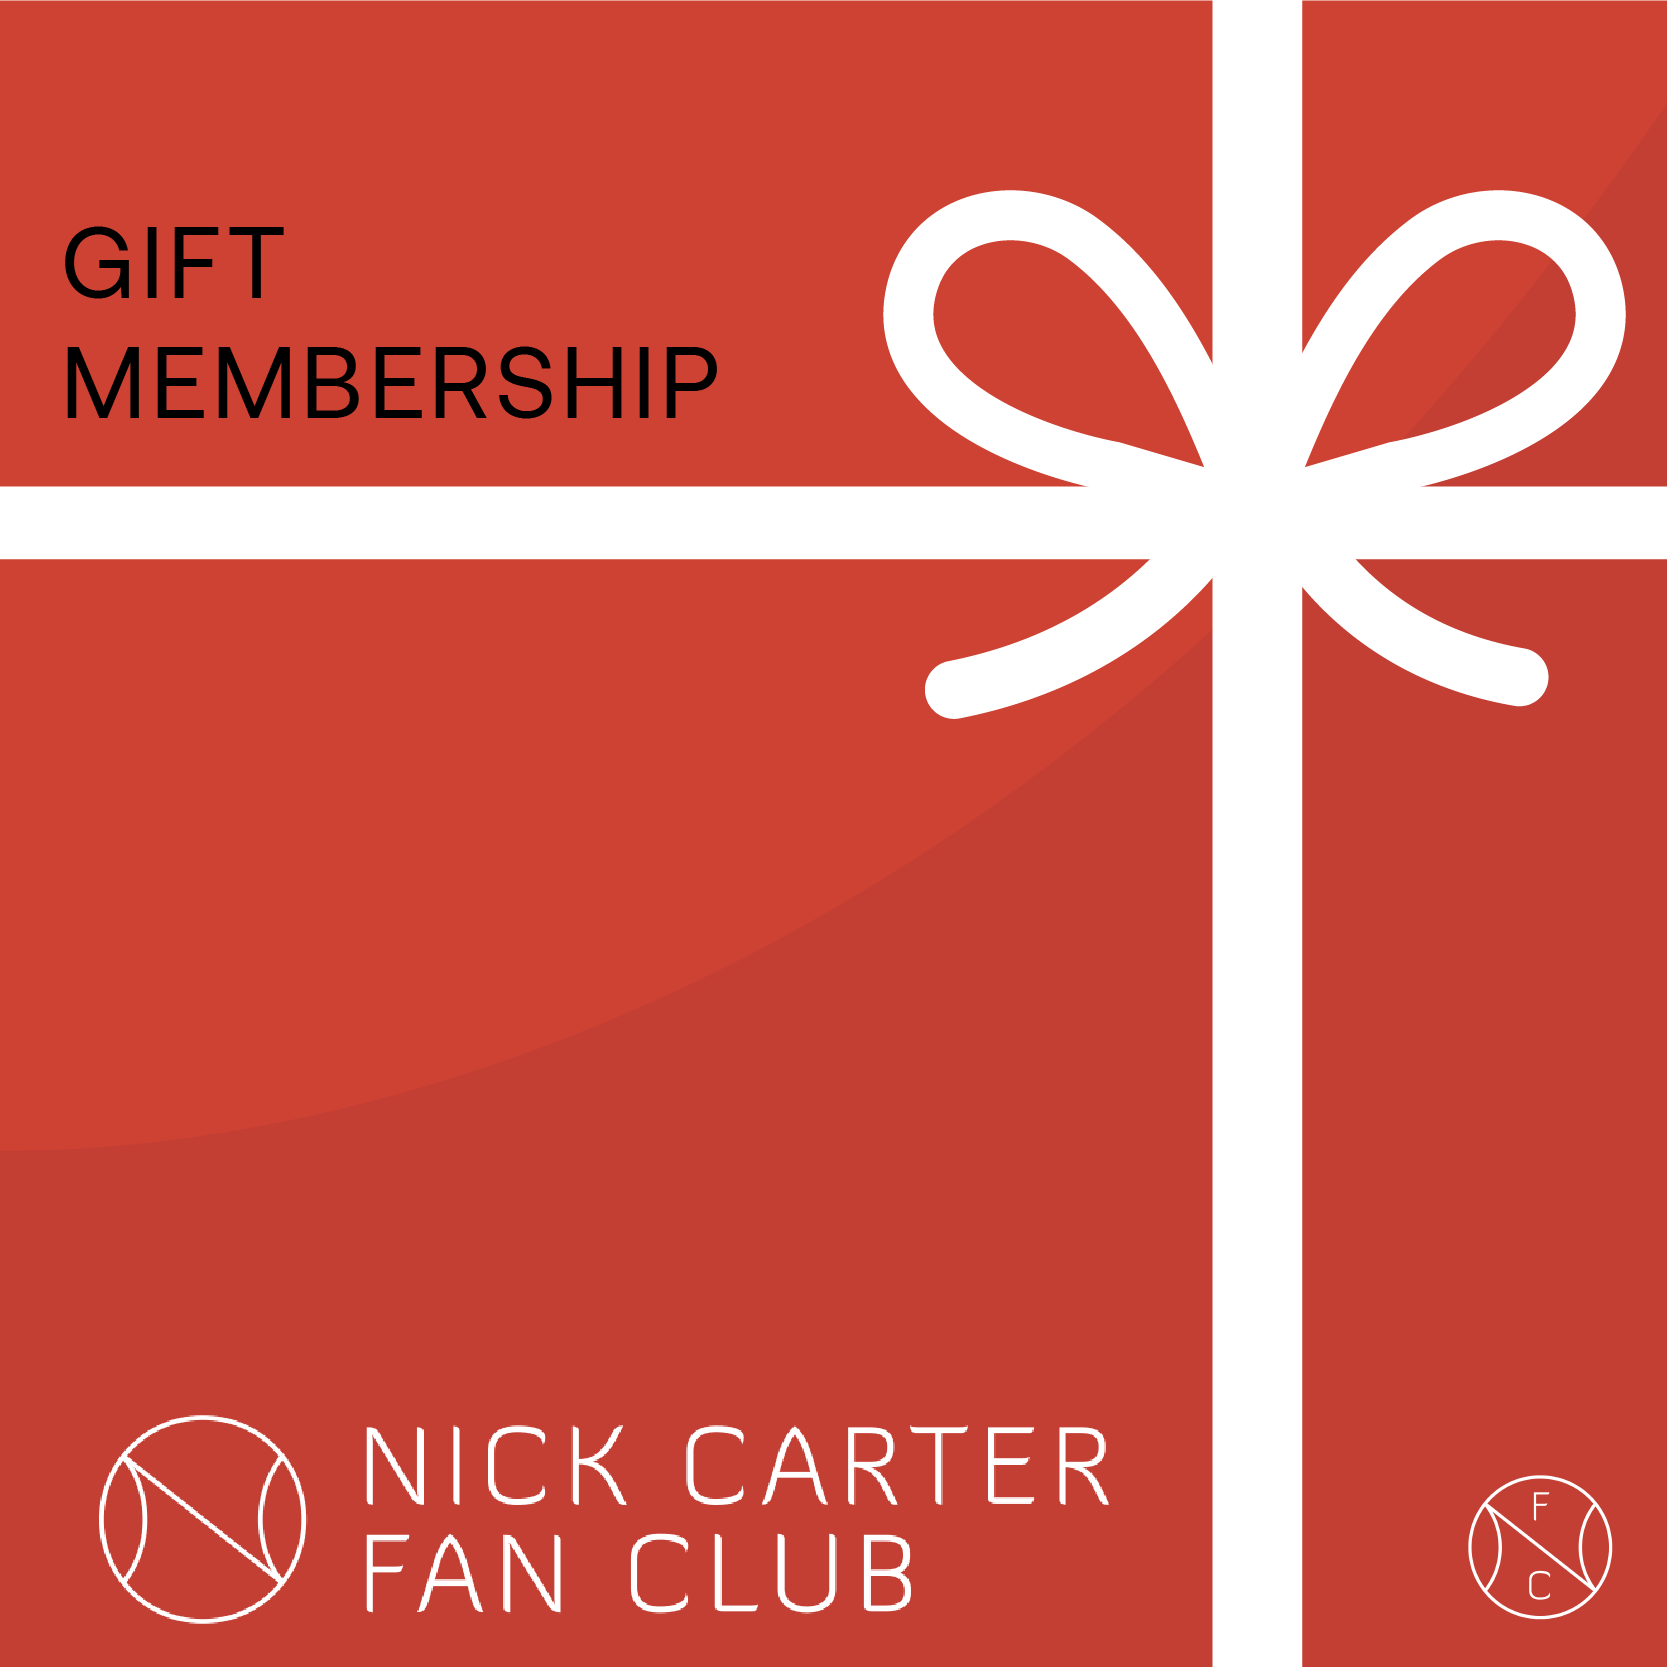 Nick Carter Fan Club 1-Year Gift Membership